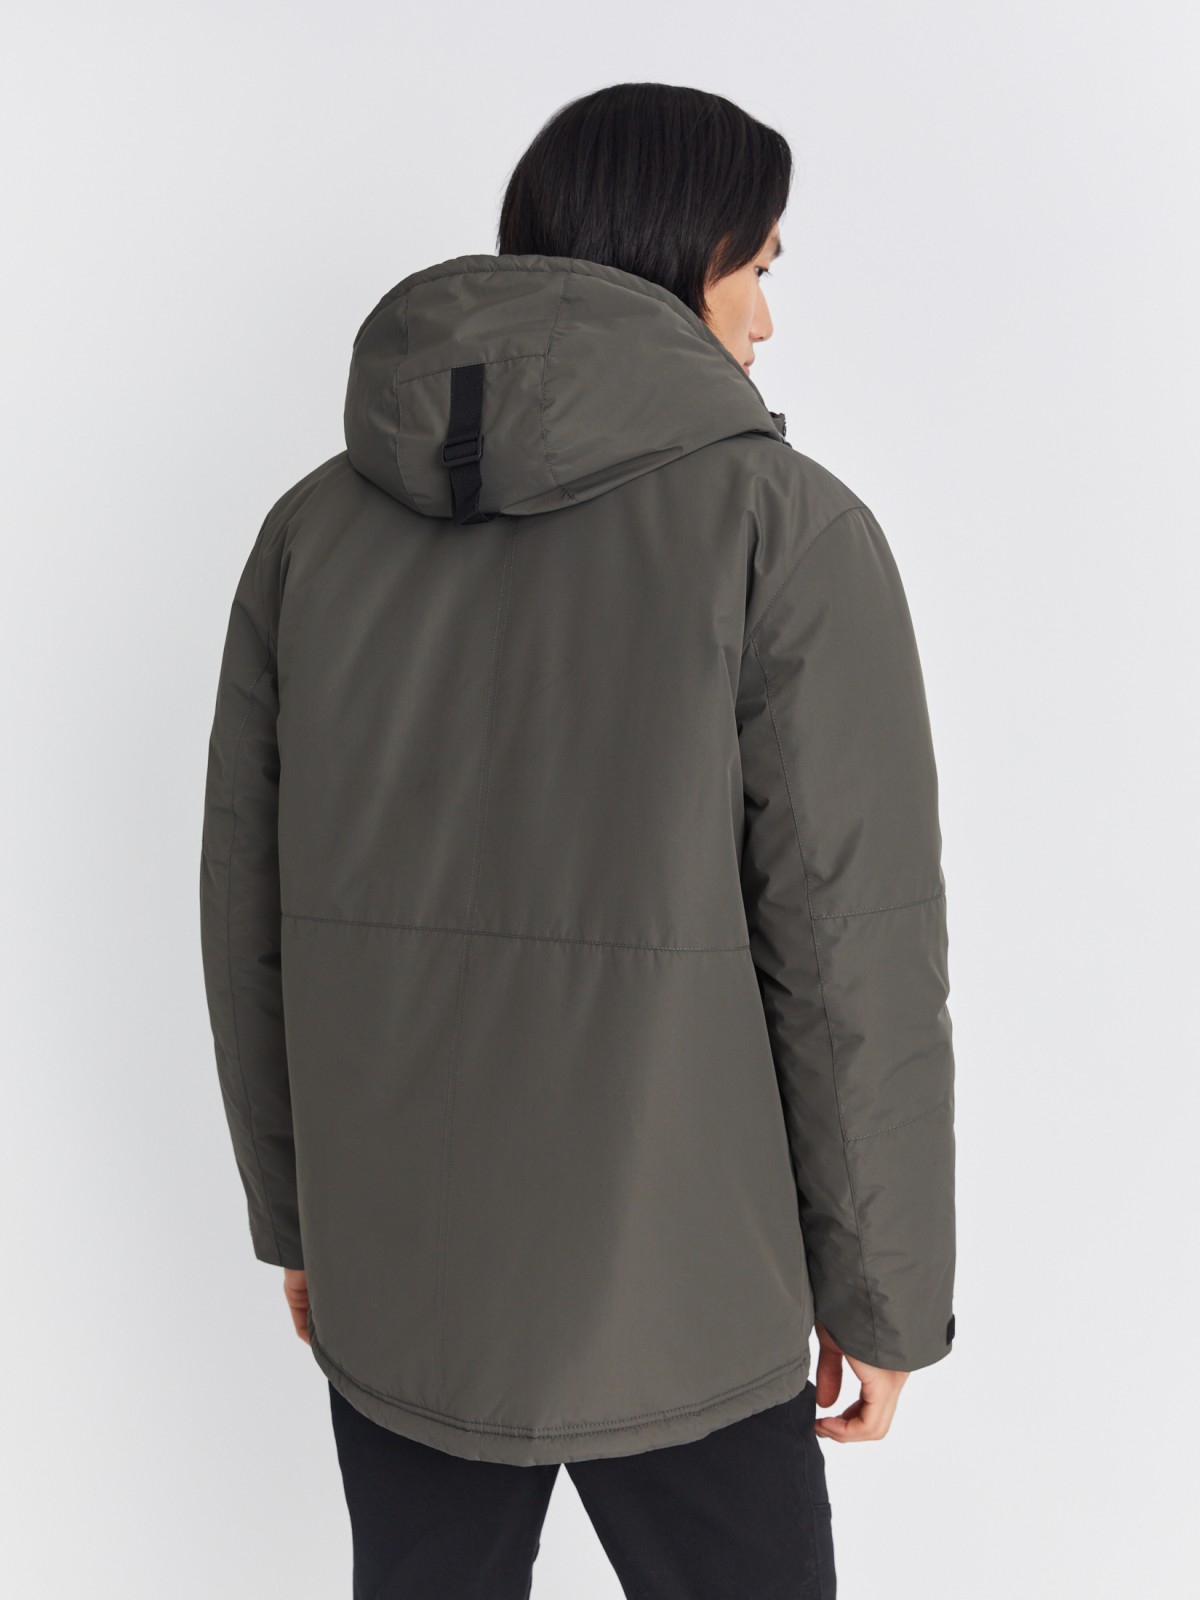 Тёплая куртка удлинённого силуэта с капюшоном на синтепоне zolla 013345102064, цвет хаки, размер L - фото 6